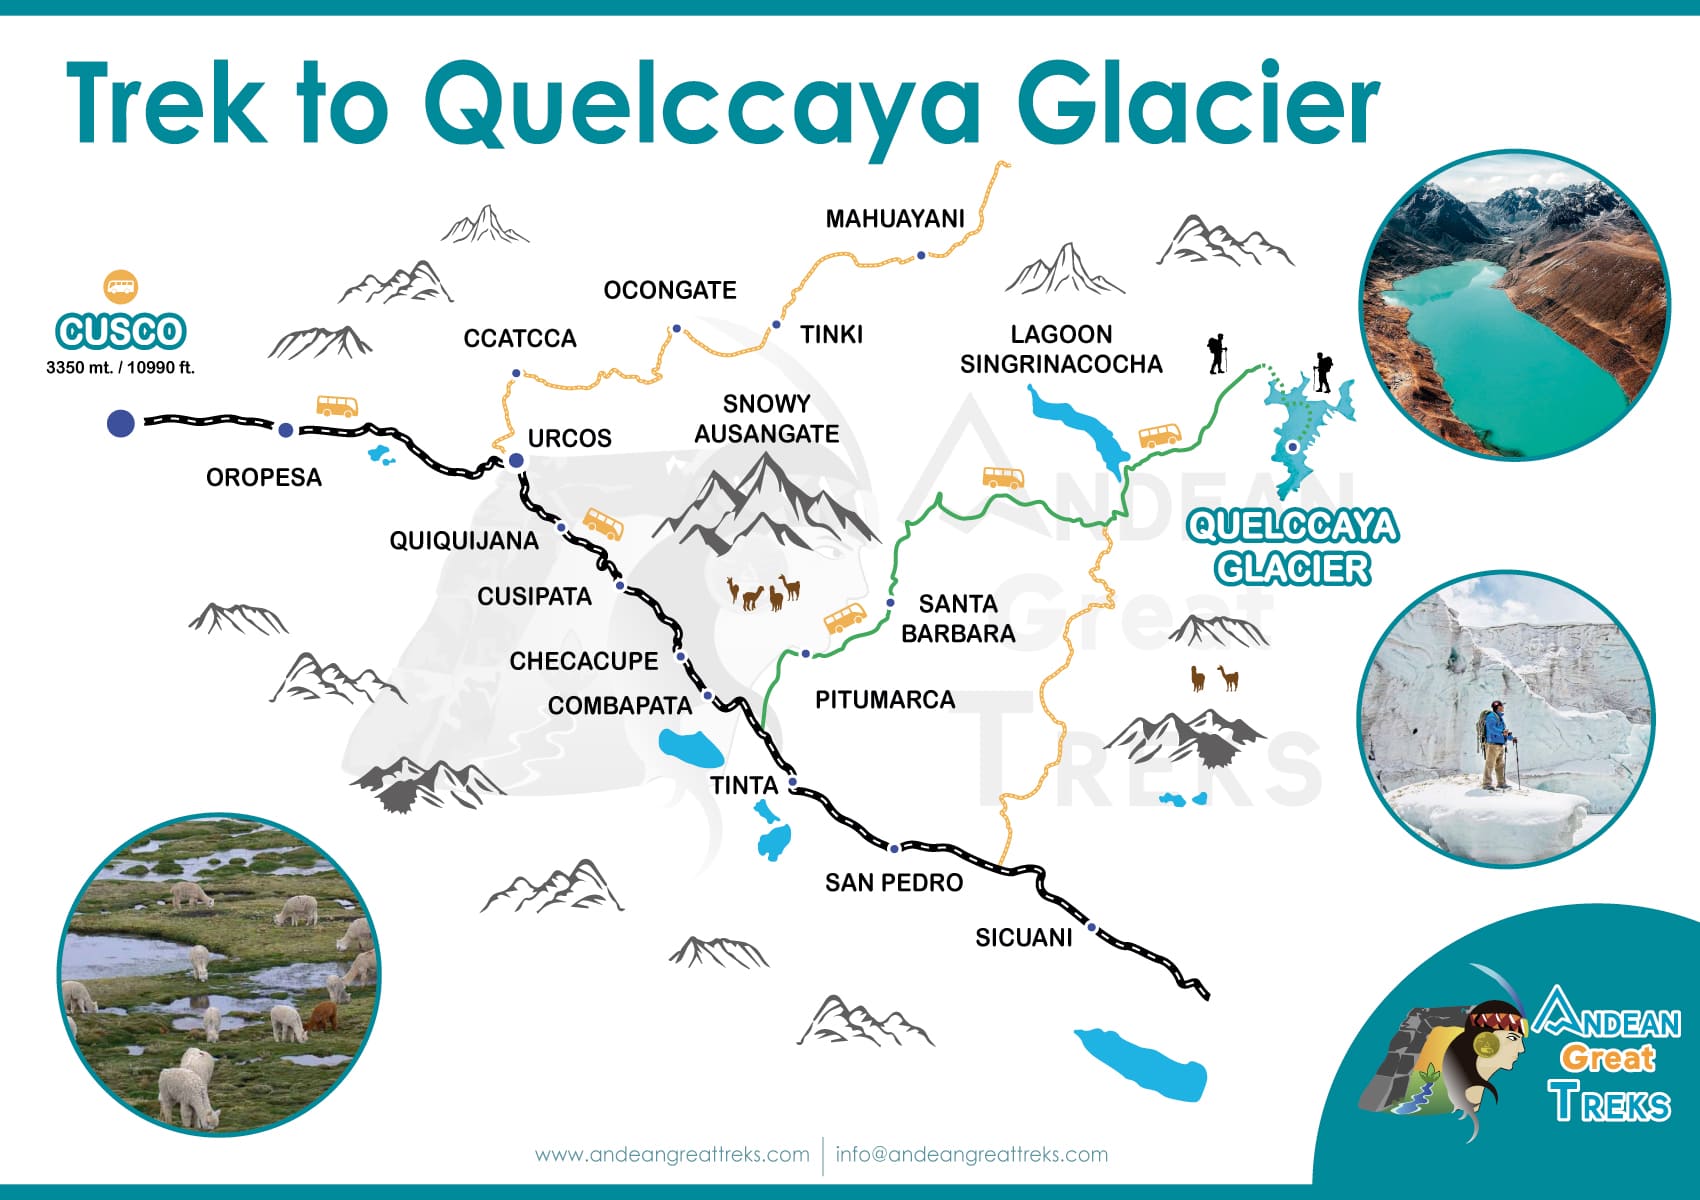 TREK-TO-QUELCCAYA-GLACIER-BY-ANDEAN-GREAT-TREKS